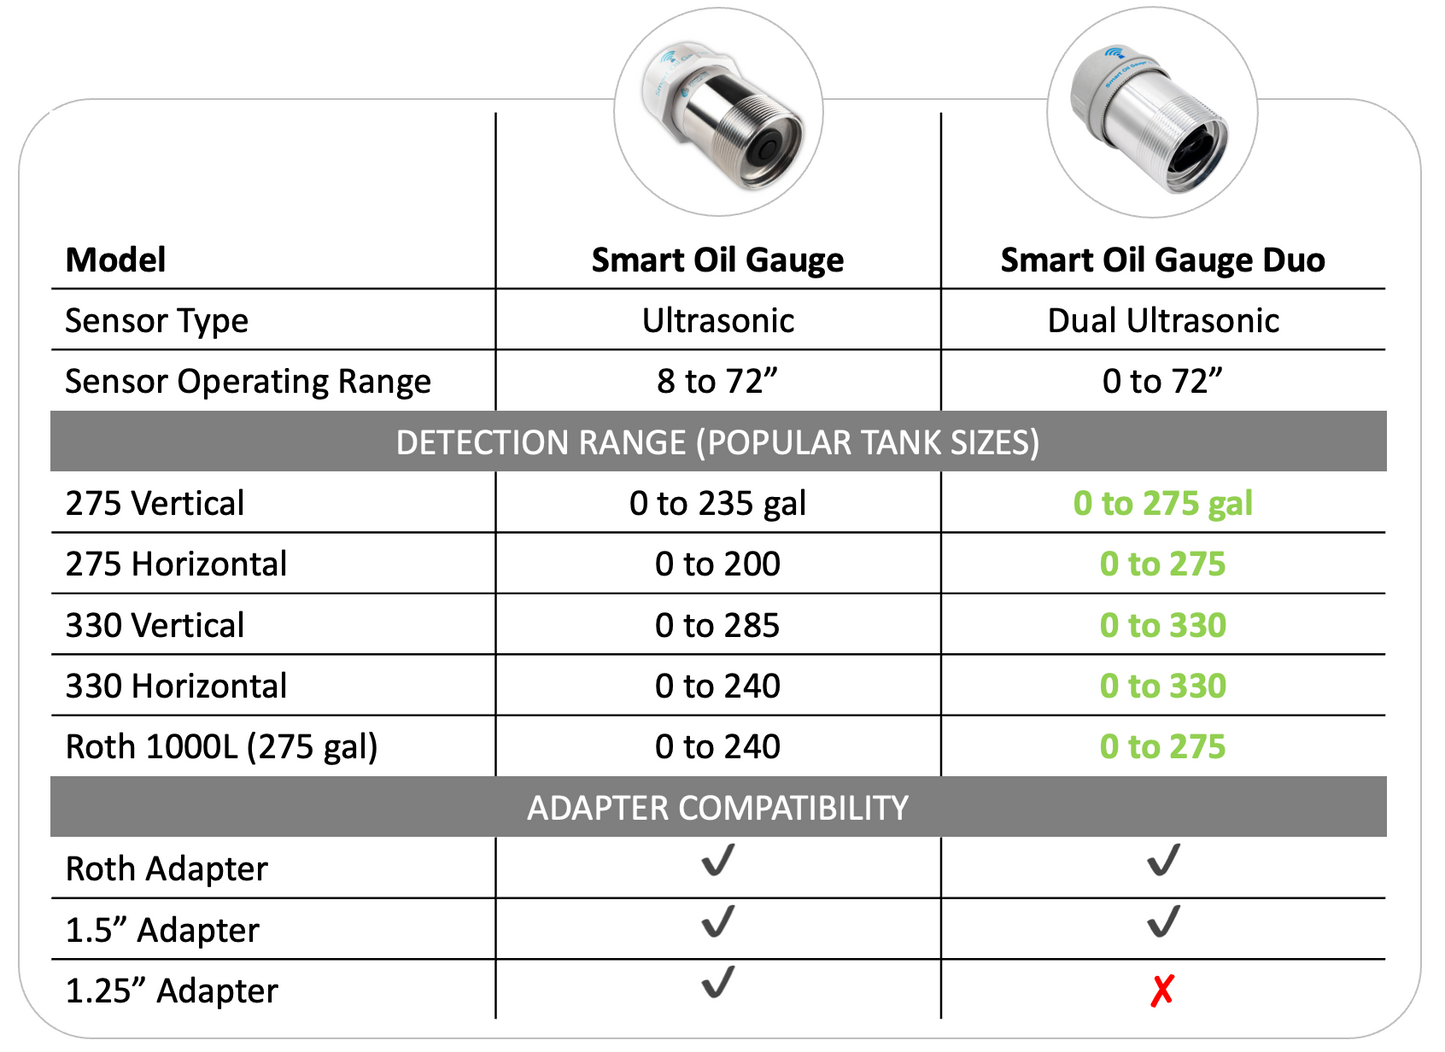 Smart Oil Gauge Duo - Indoor Use Only